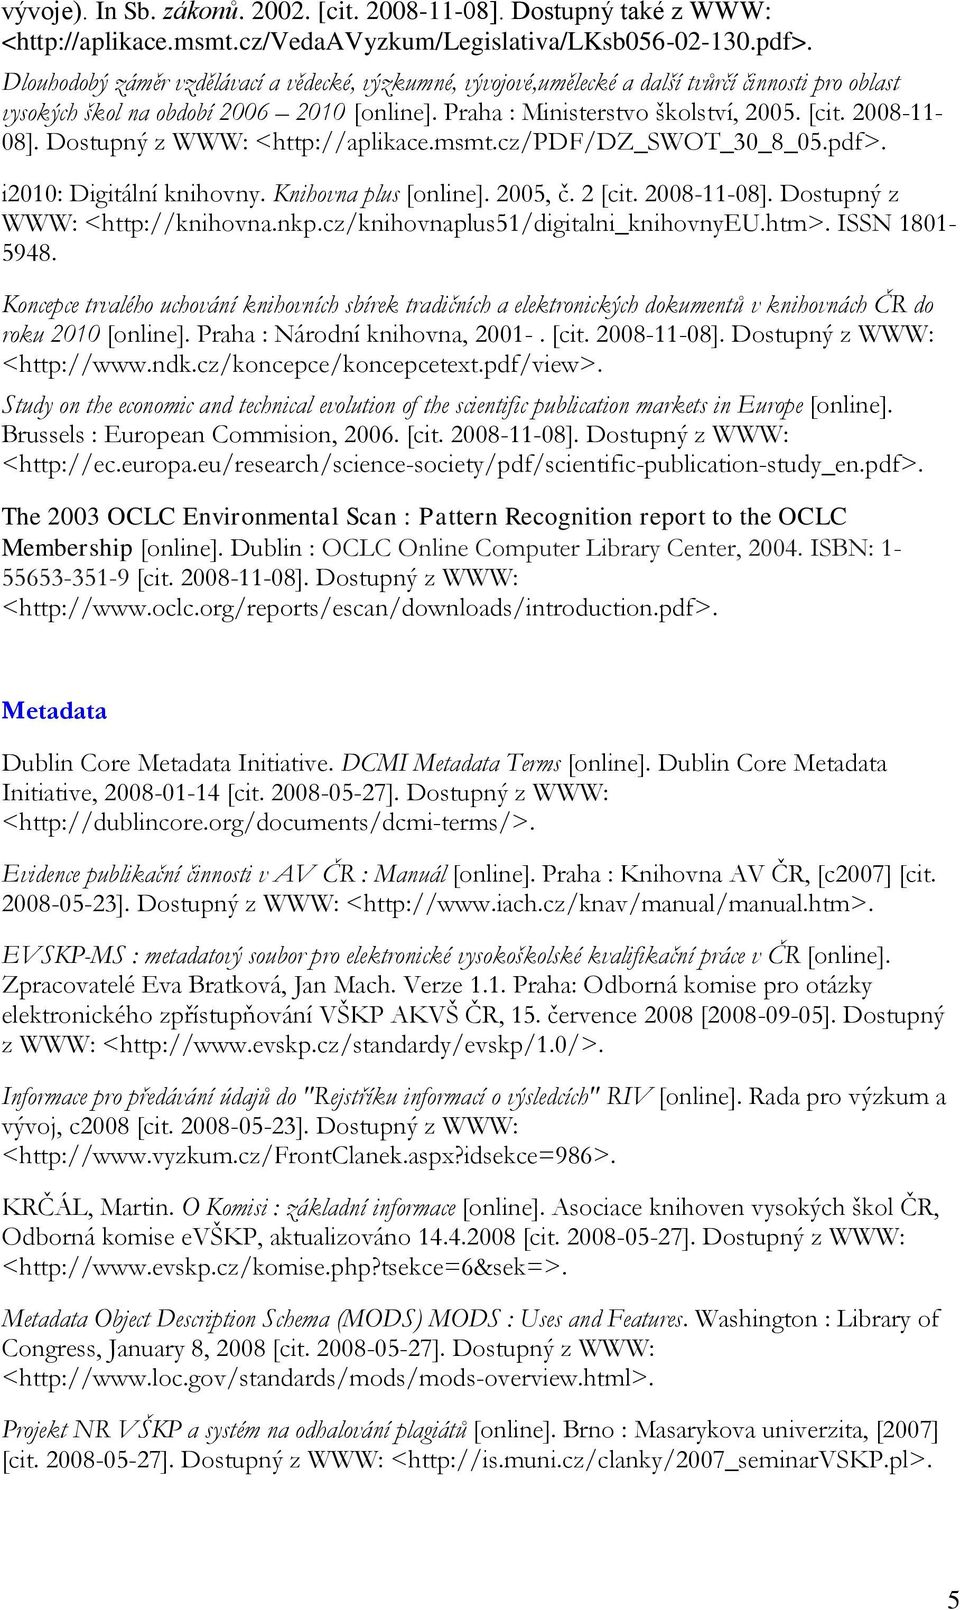 2008-11- 08]. Dostupný z WWW: <http://aplikace.msmt.cz/pdf/dz_swot_30_8_05.pdf>. i2010: Digitální knihovny. Knihovna plus [online]. 2005, č. 2 [cit. 2008-11-08]. Dostupný z WWW: <http://knihovna.nkp.